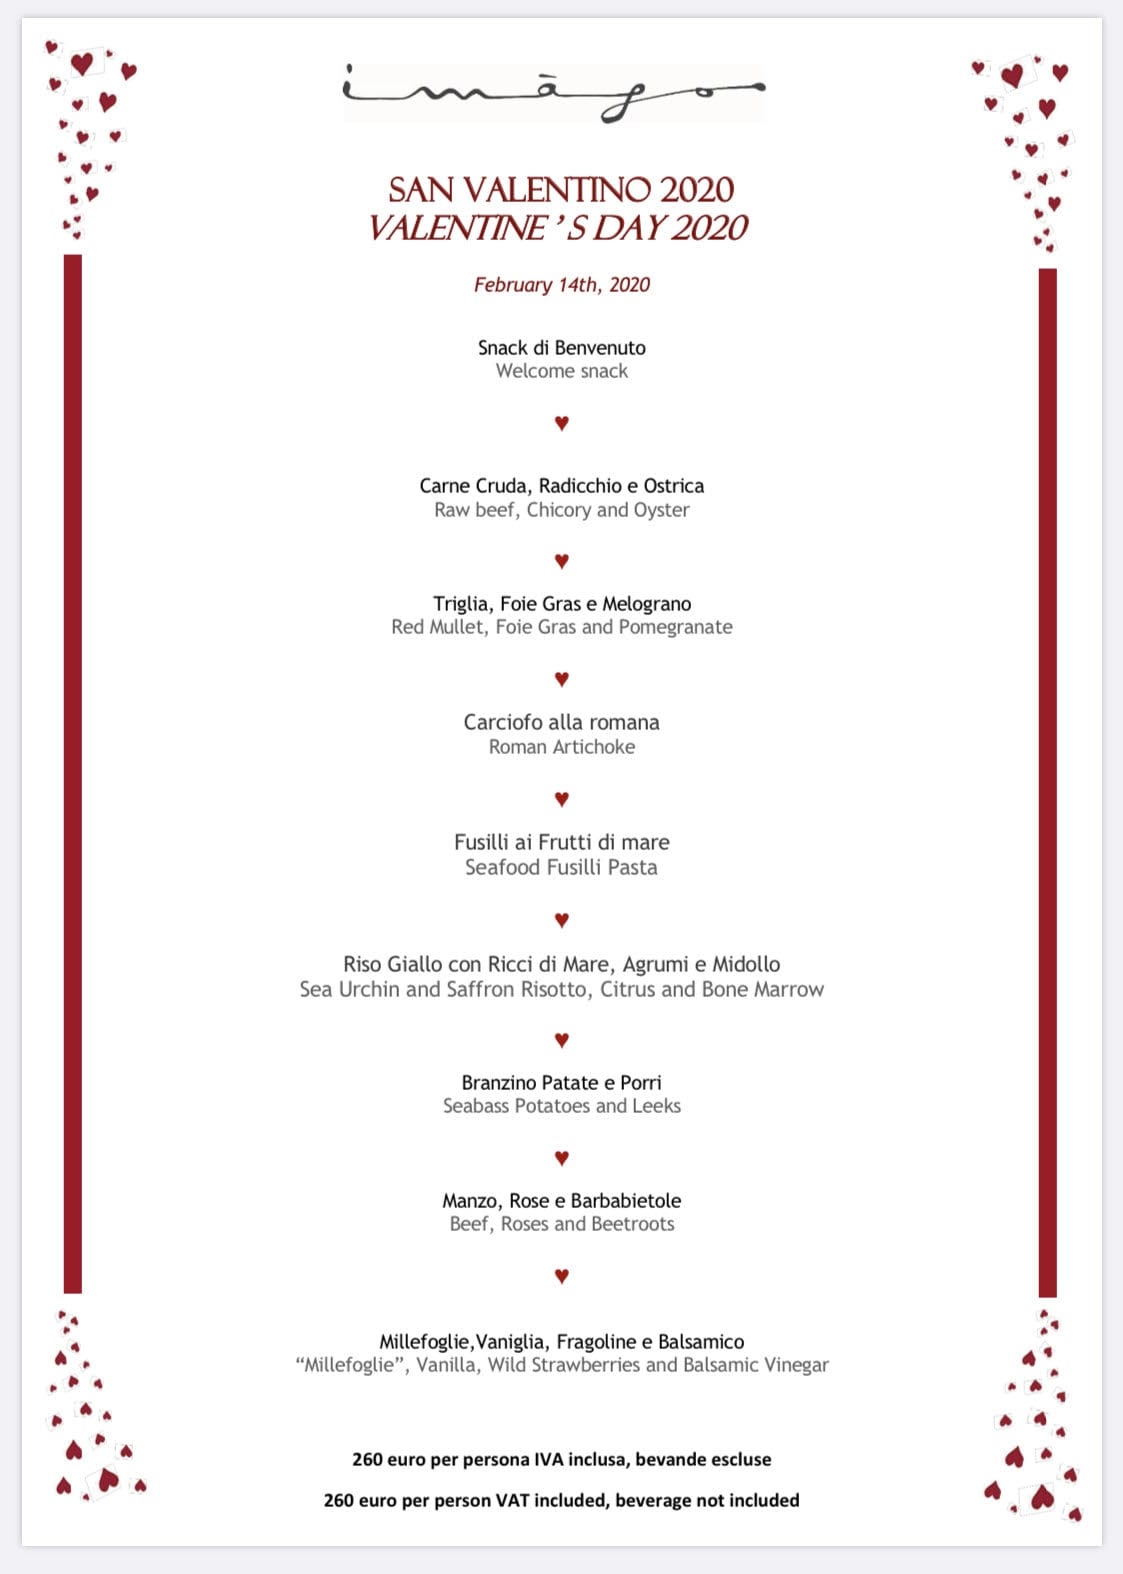 San Valentino 2020, a tavola con amore con i menù di 5 ristoranti speciali